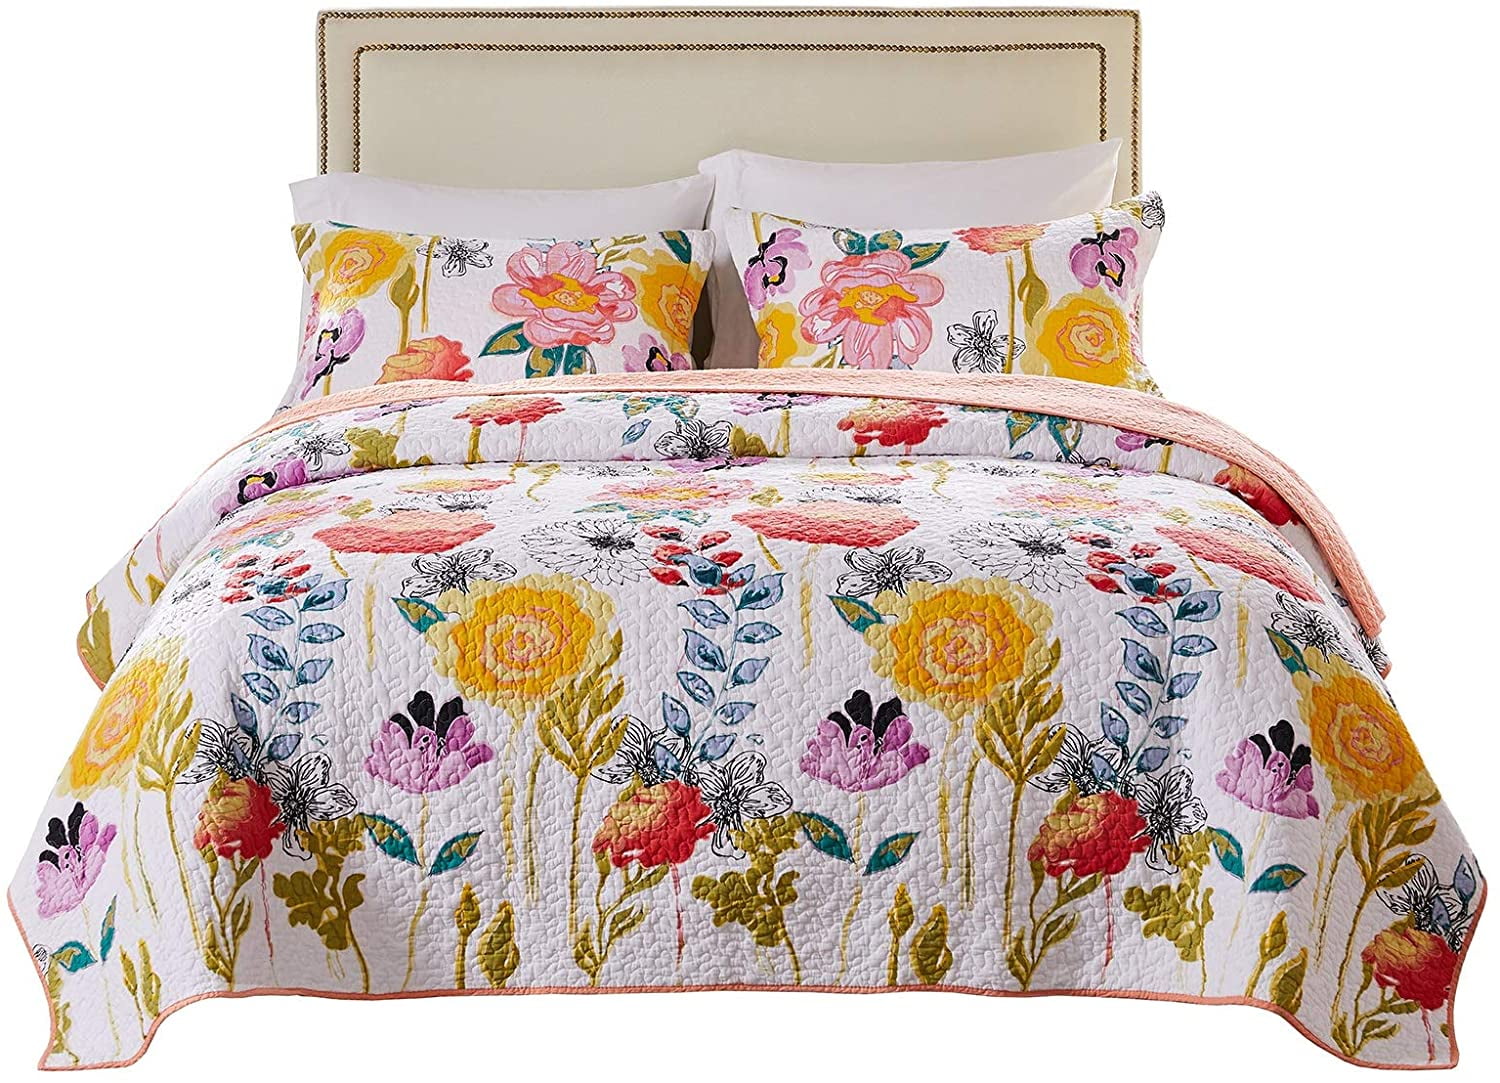 Lush Decor 3 pc Reversible Cotton King Quilt Bedspread Set  Orange Blue ret $250 